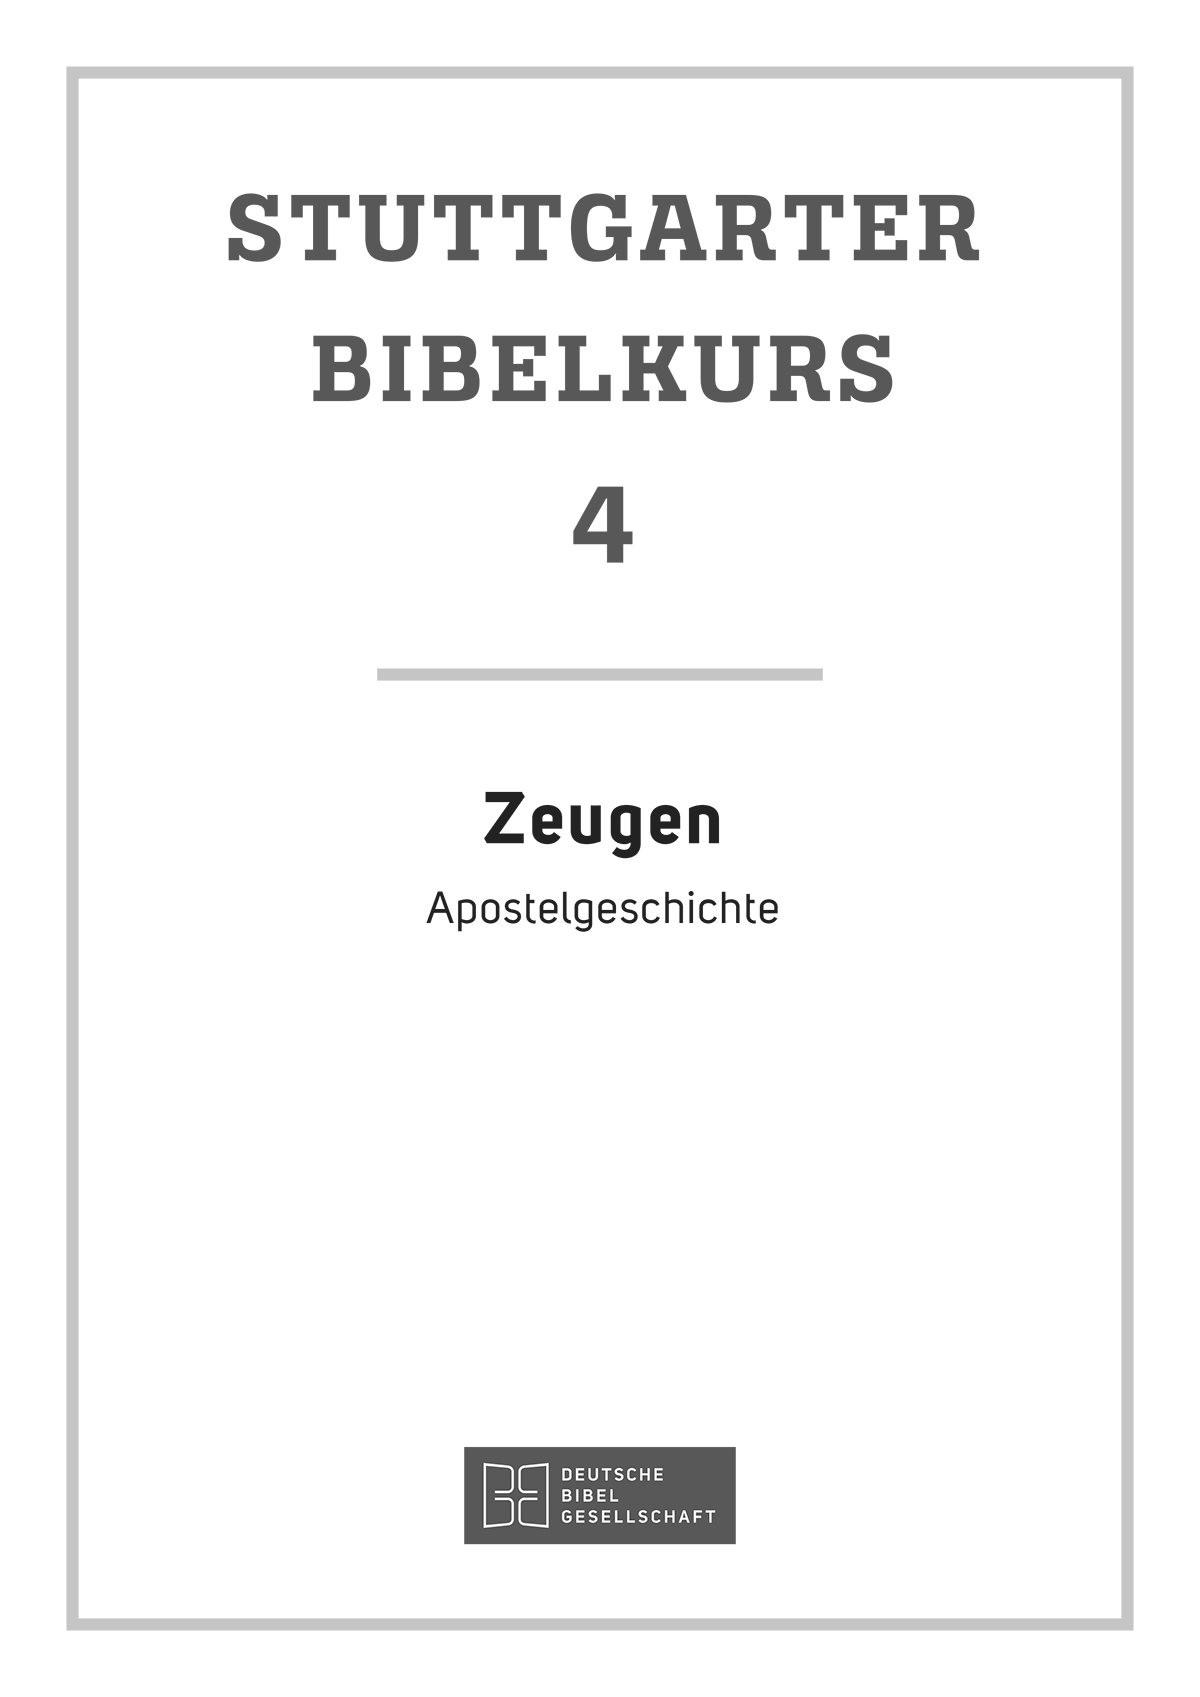 Stuttgarter Bibelkurs. Heft 4 NT: Zeugen. eBook im PDF-Format